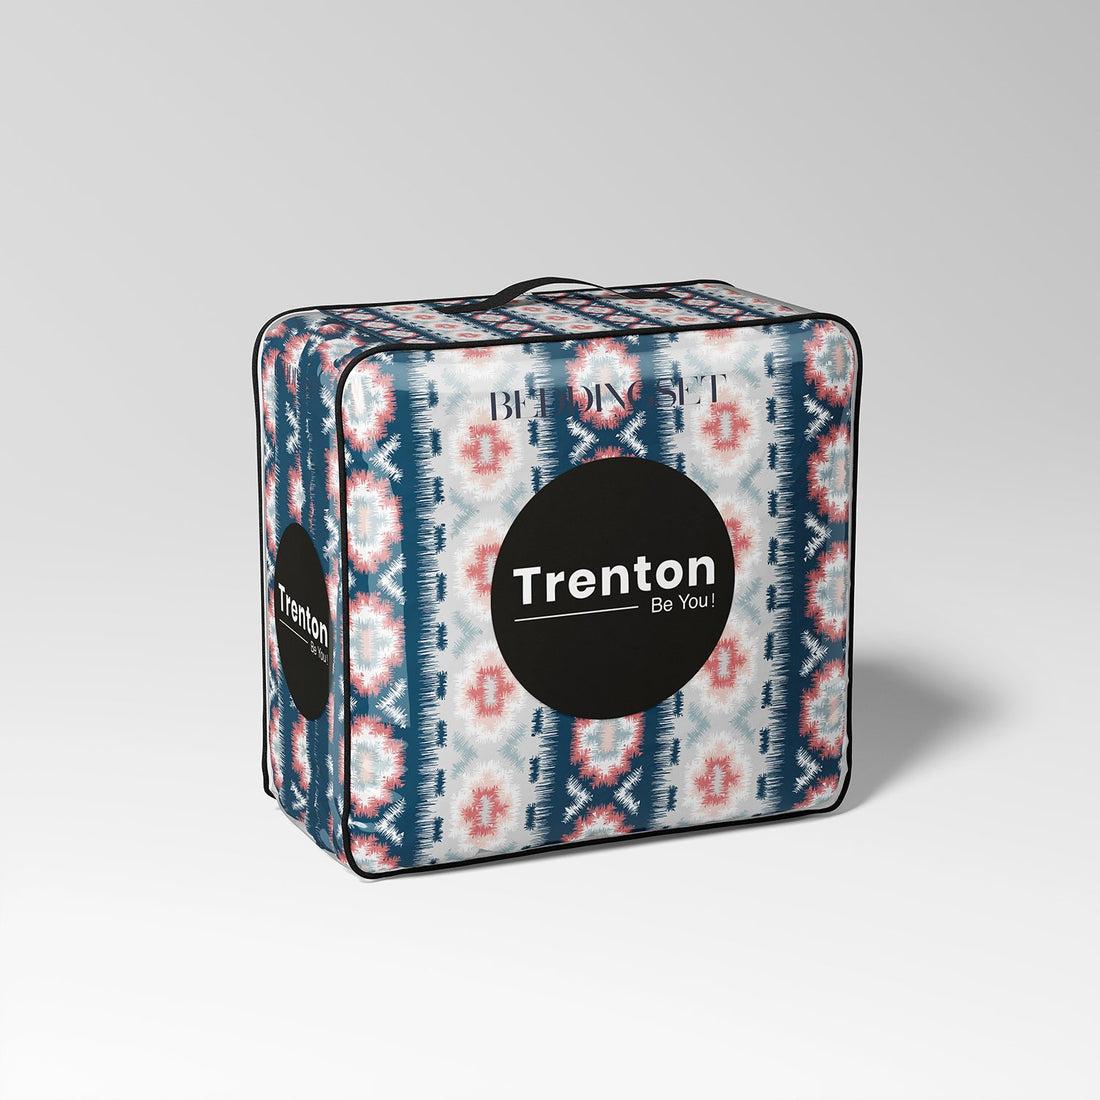 Ben-di-ta Comforter - Trenton